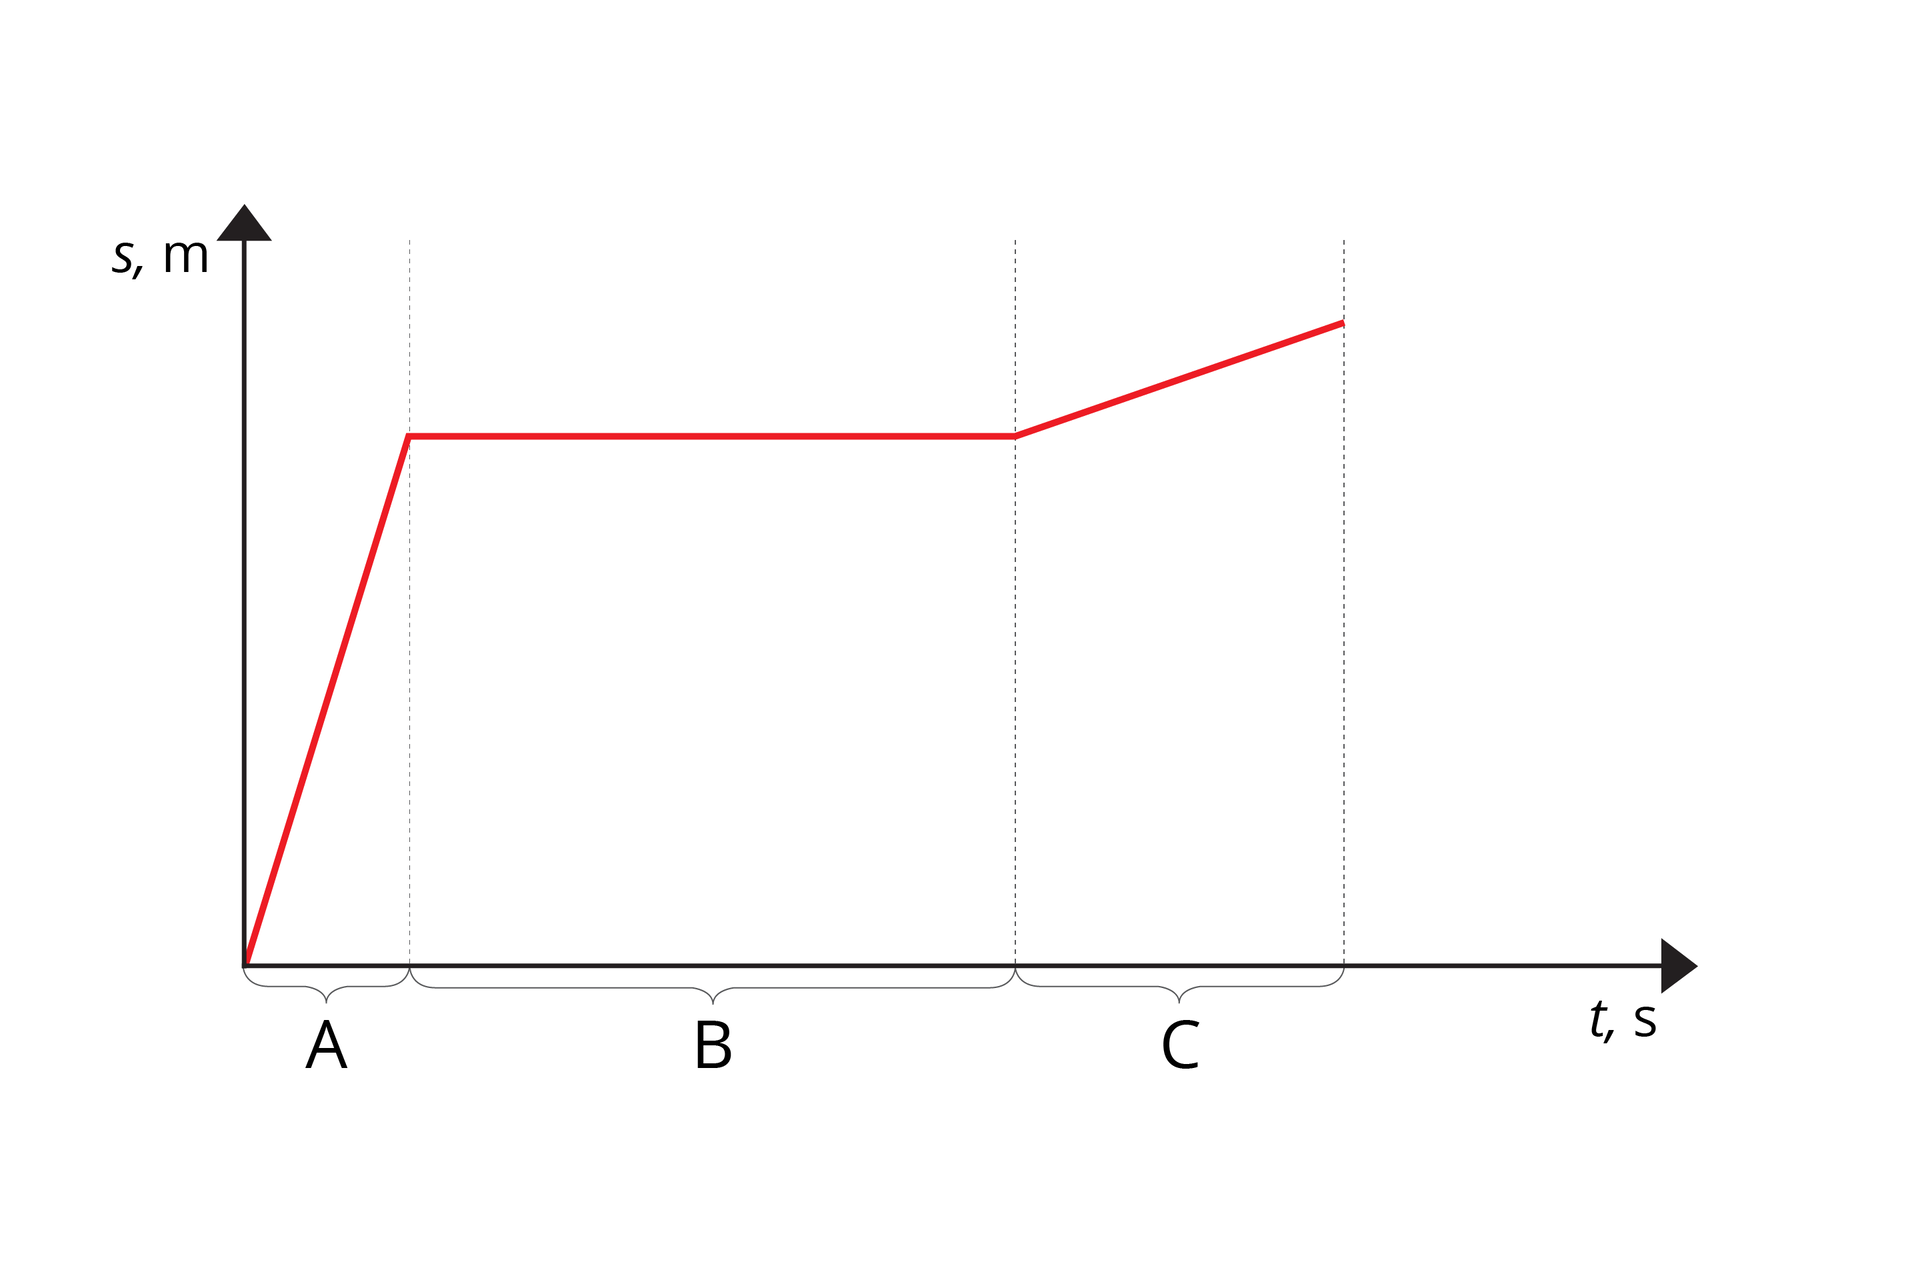 Ilustracja przedstawia wykres zależności drogi od czasu. Oś odciętych podpisana „t, s”. Oś rzędnych podpisana „s, m”. Wykres łamanej półprostej. Kolor czerwony. Na osiach nie oznaczono skali. Oś odciętych podzielono na etapy: A (najkrótszy), B (najdłuższy) i C. Wykres w etapie A wznosi się stromo w górę. Wykres etapie B biegnie równolegle do osi odciętych. Wykres w etapie C wznosi się łagodnie w górę.